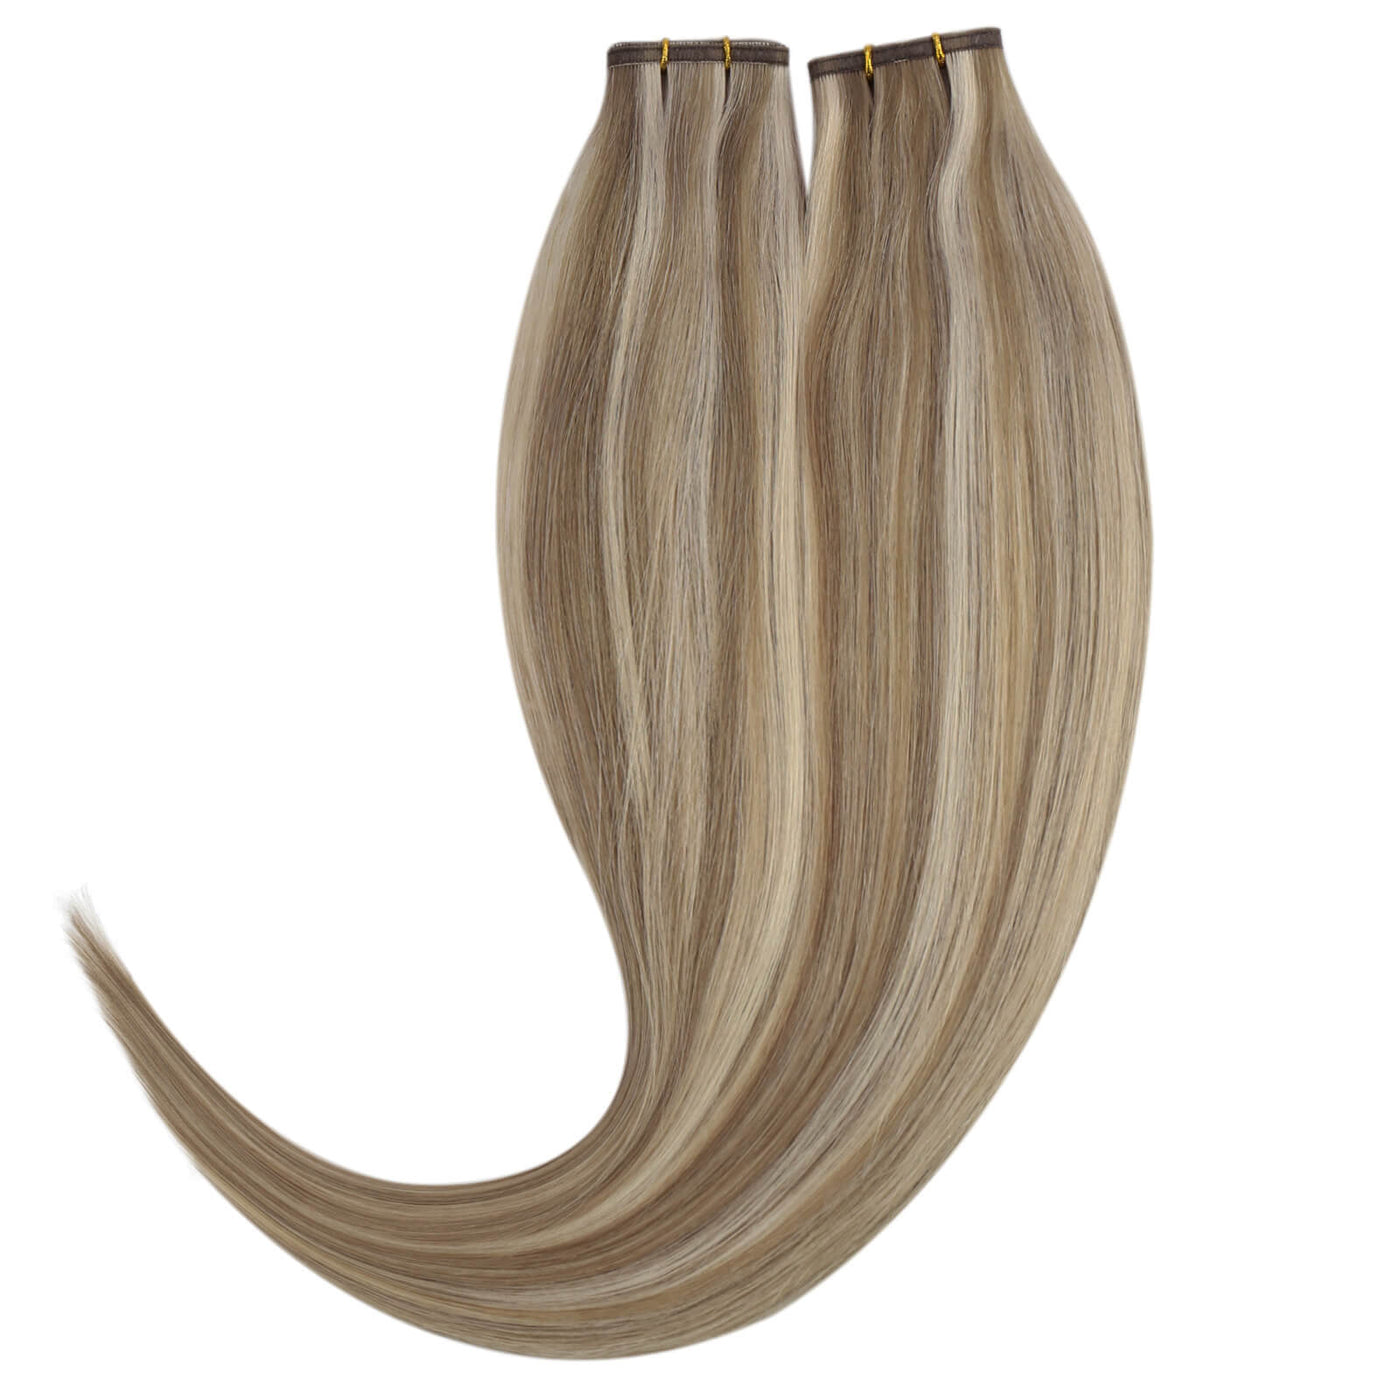 Flat Silk Weft PU Sew In Human Virgin Hair Blonde Highlights Platium Blonde For Women #P8/60